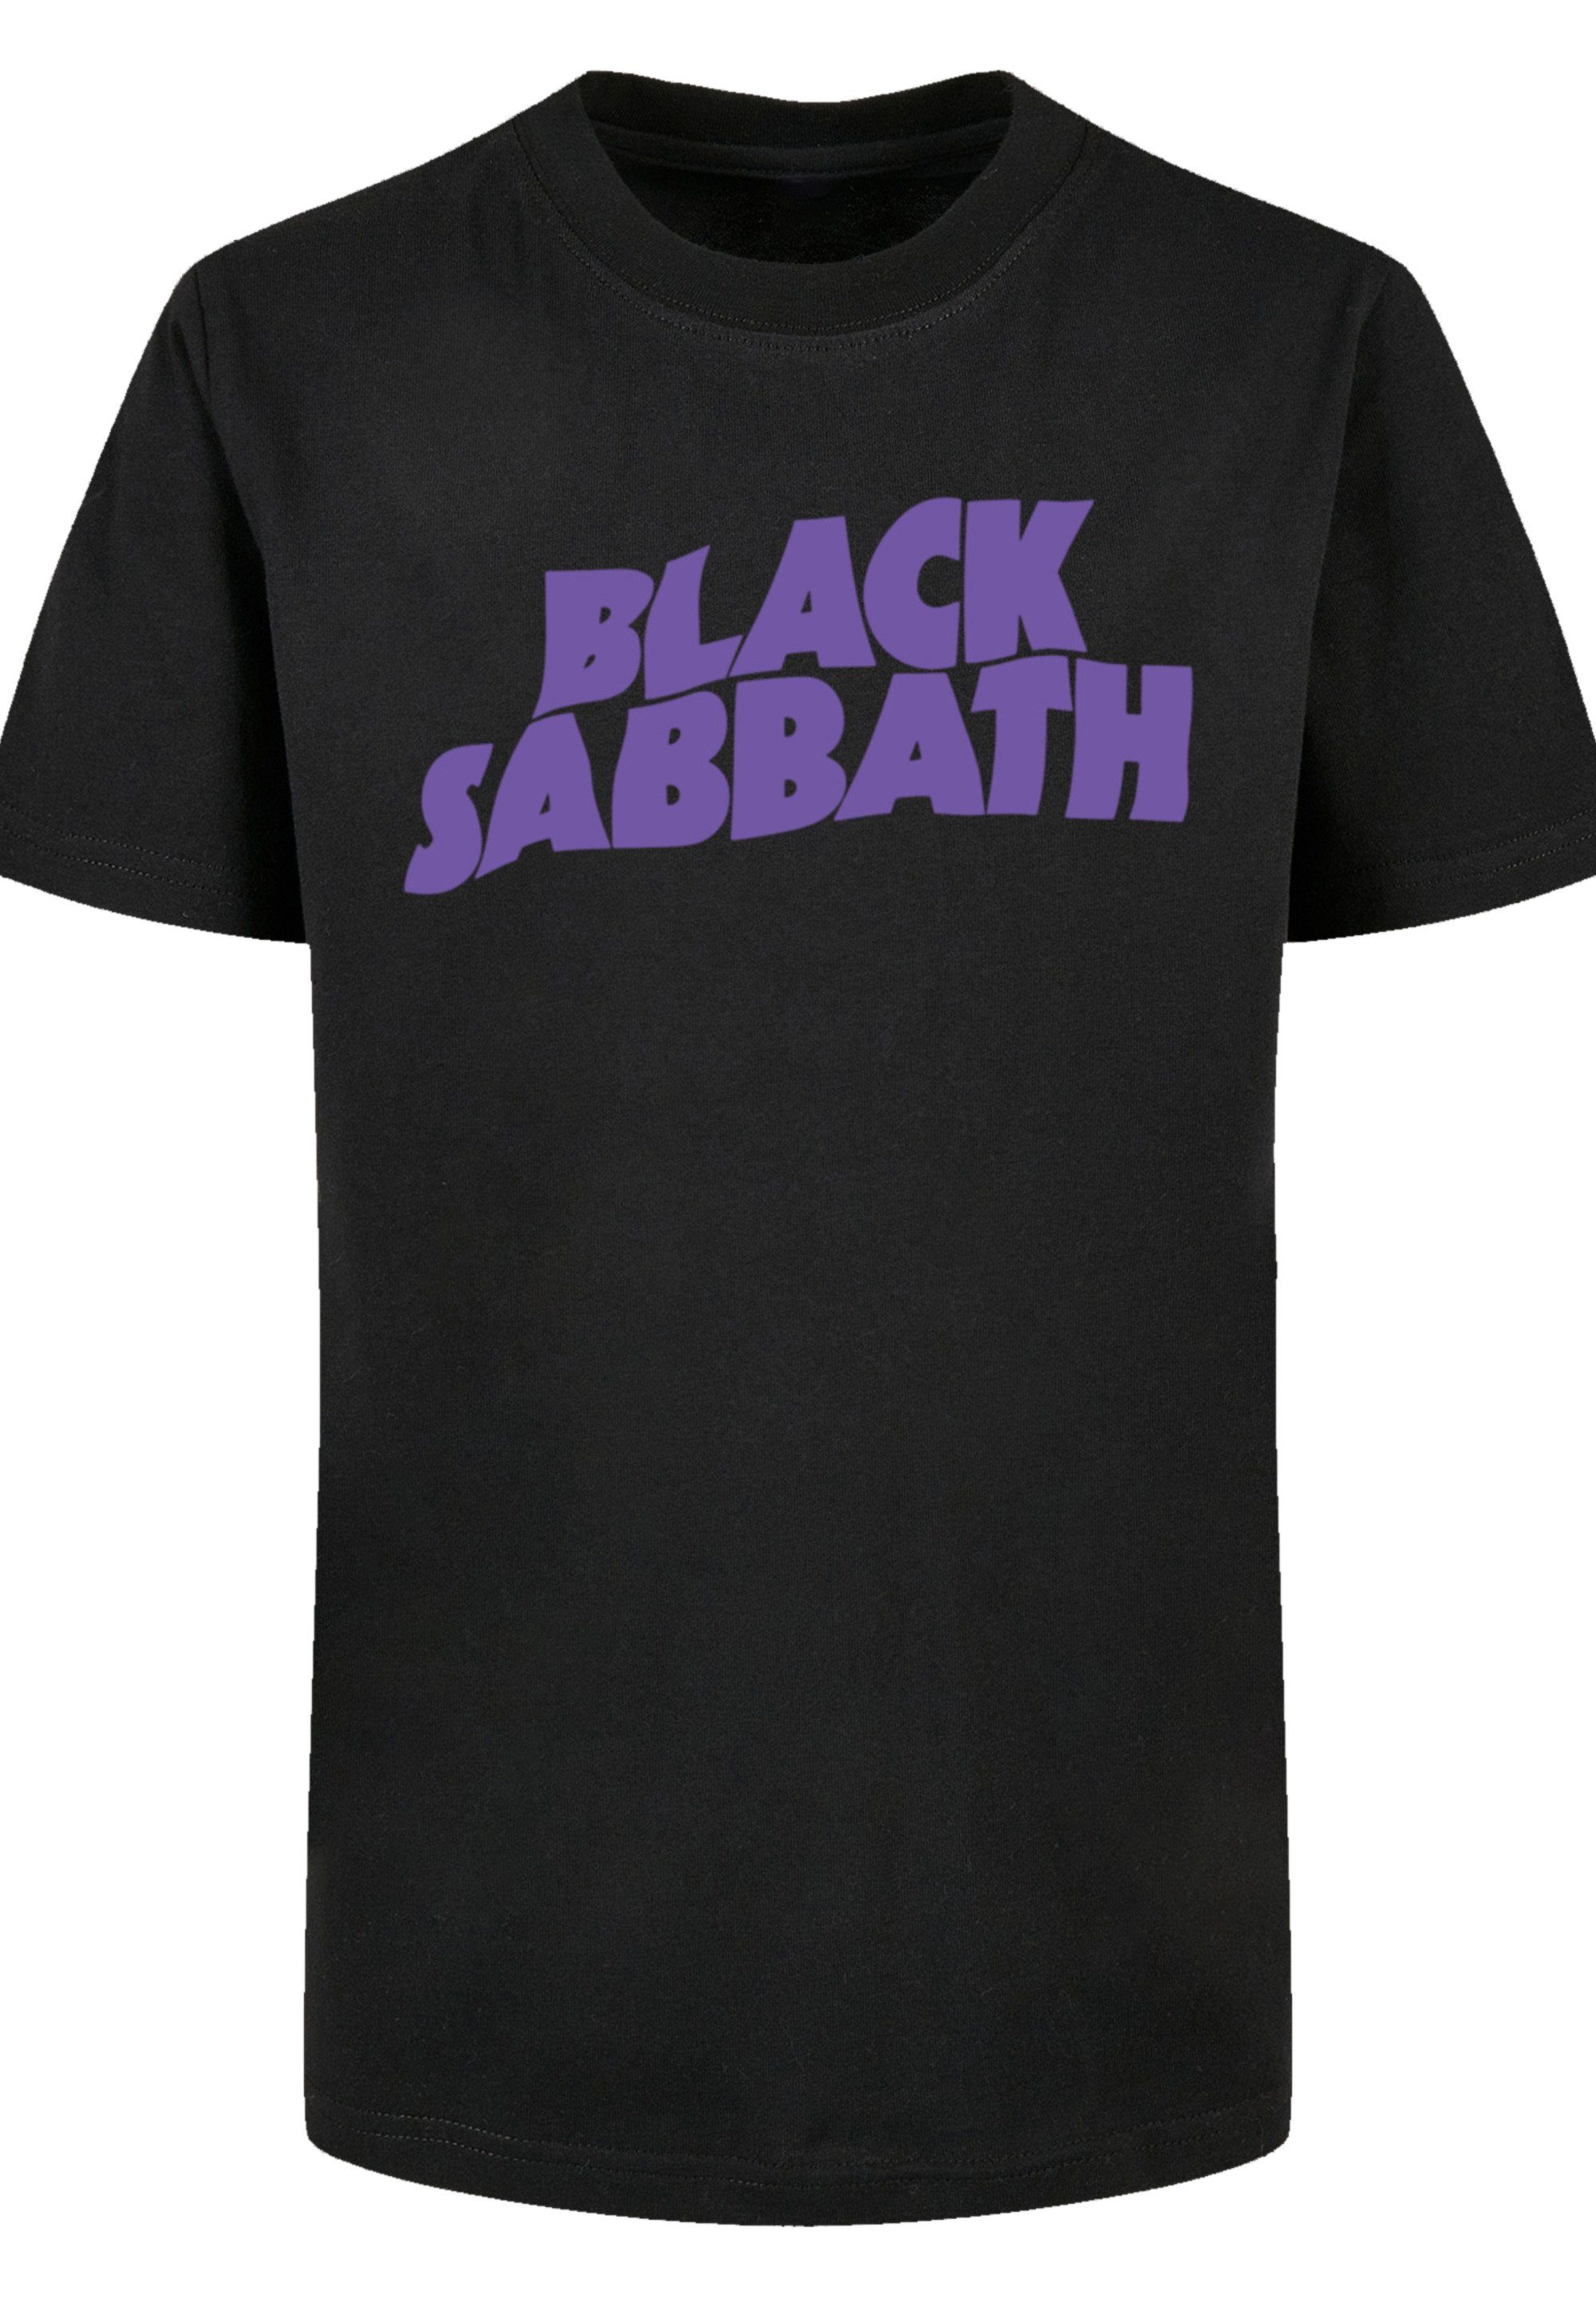 T-Shirt und Logo Rundhalsausschnitt gerippten F4NT4STIC Fit Sabbath Black Regular Black Wavy mit Print,